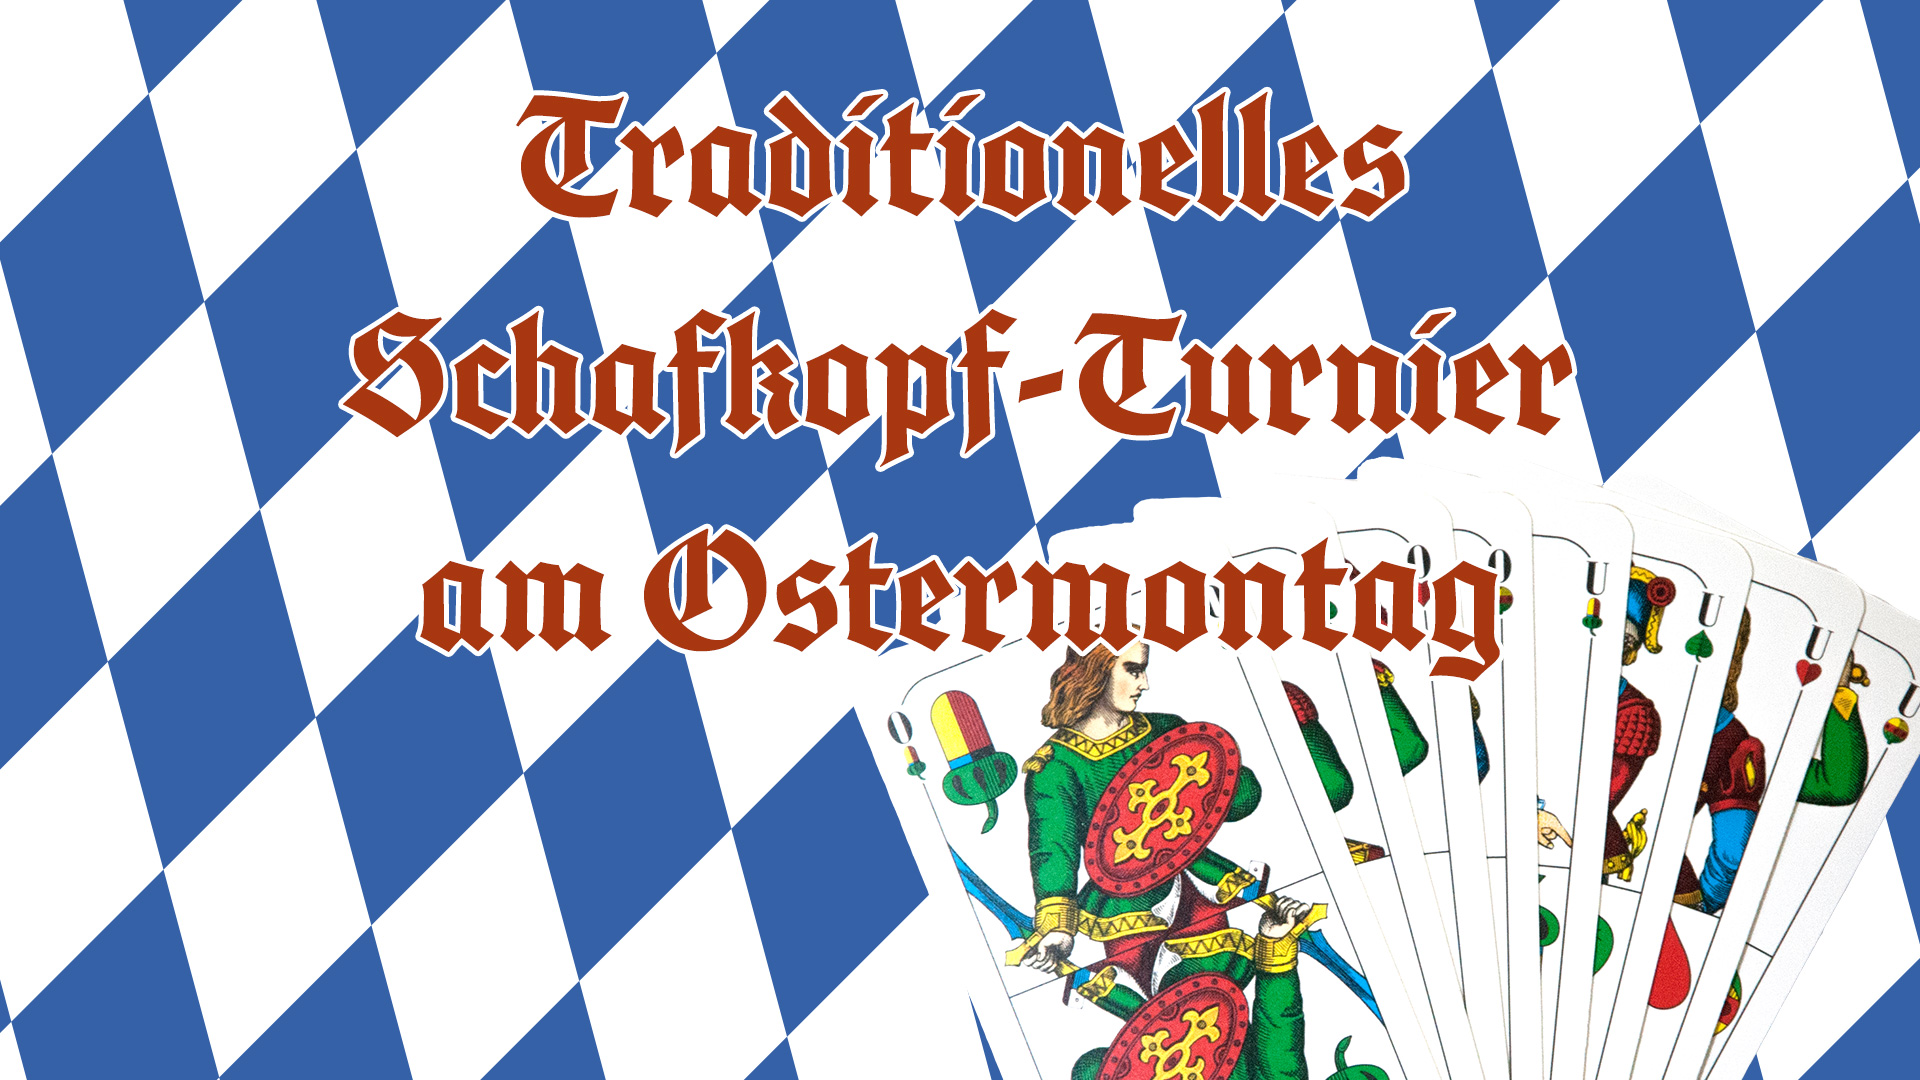 Traditionelles Schafkopf-Turnier